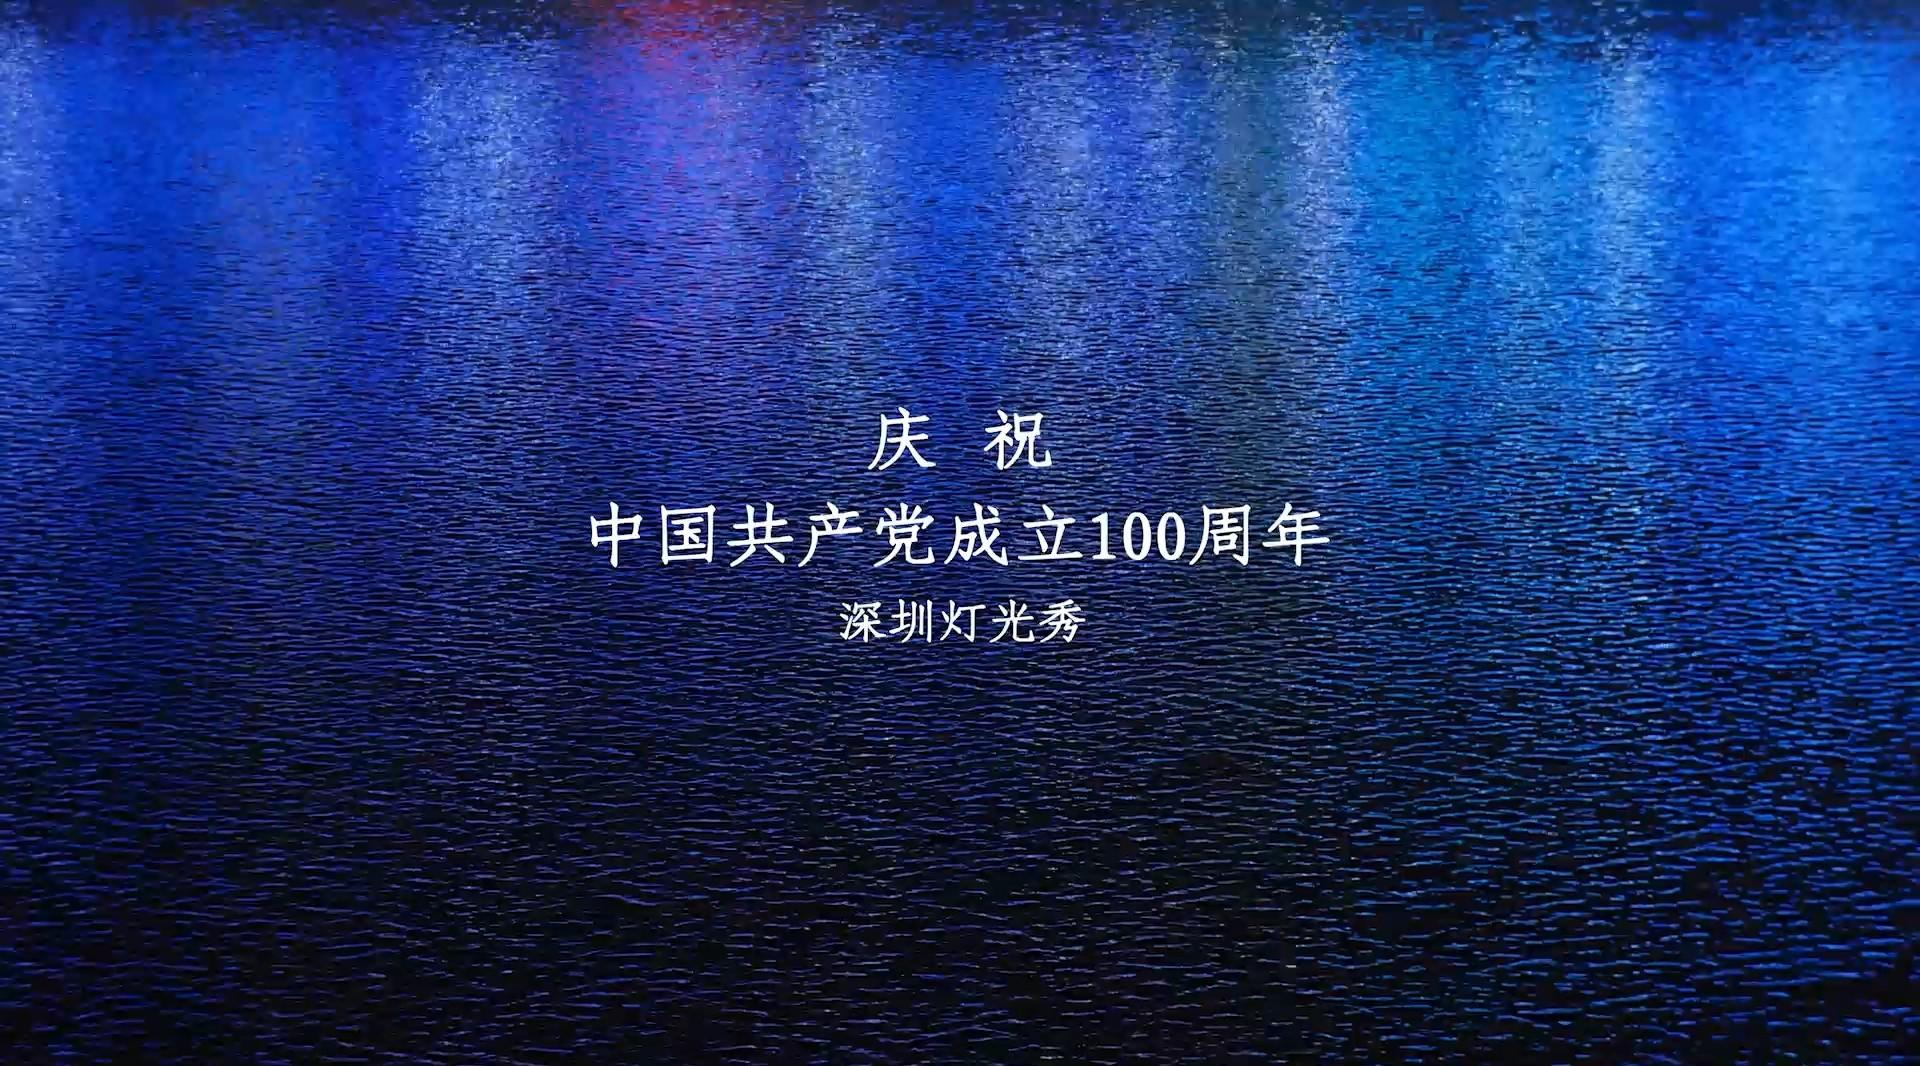 庆祝建党成立100周年 深圳灯光秀